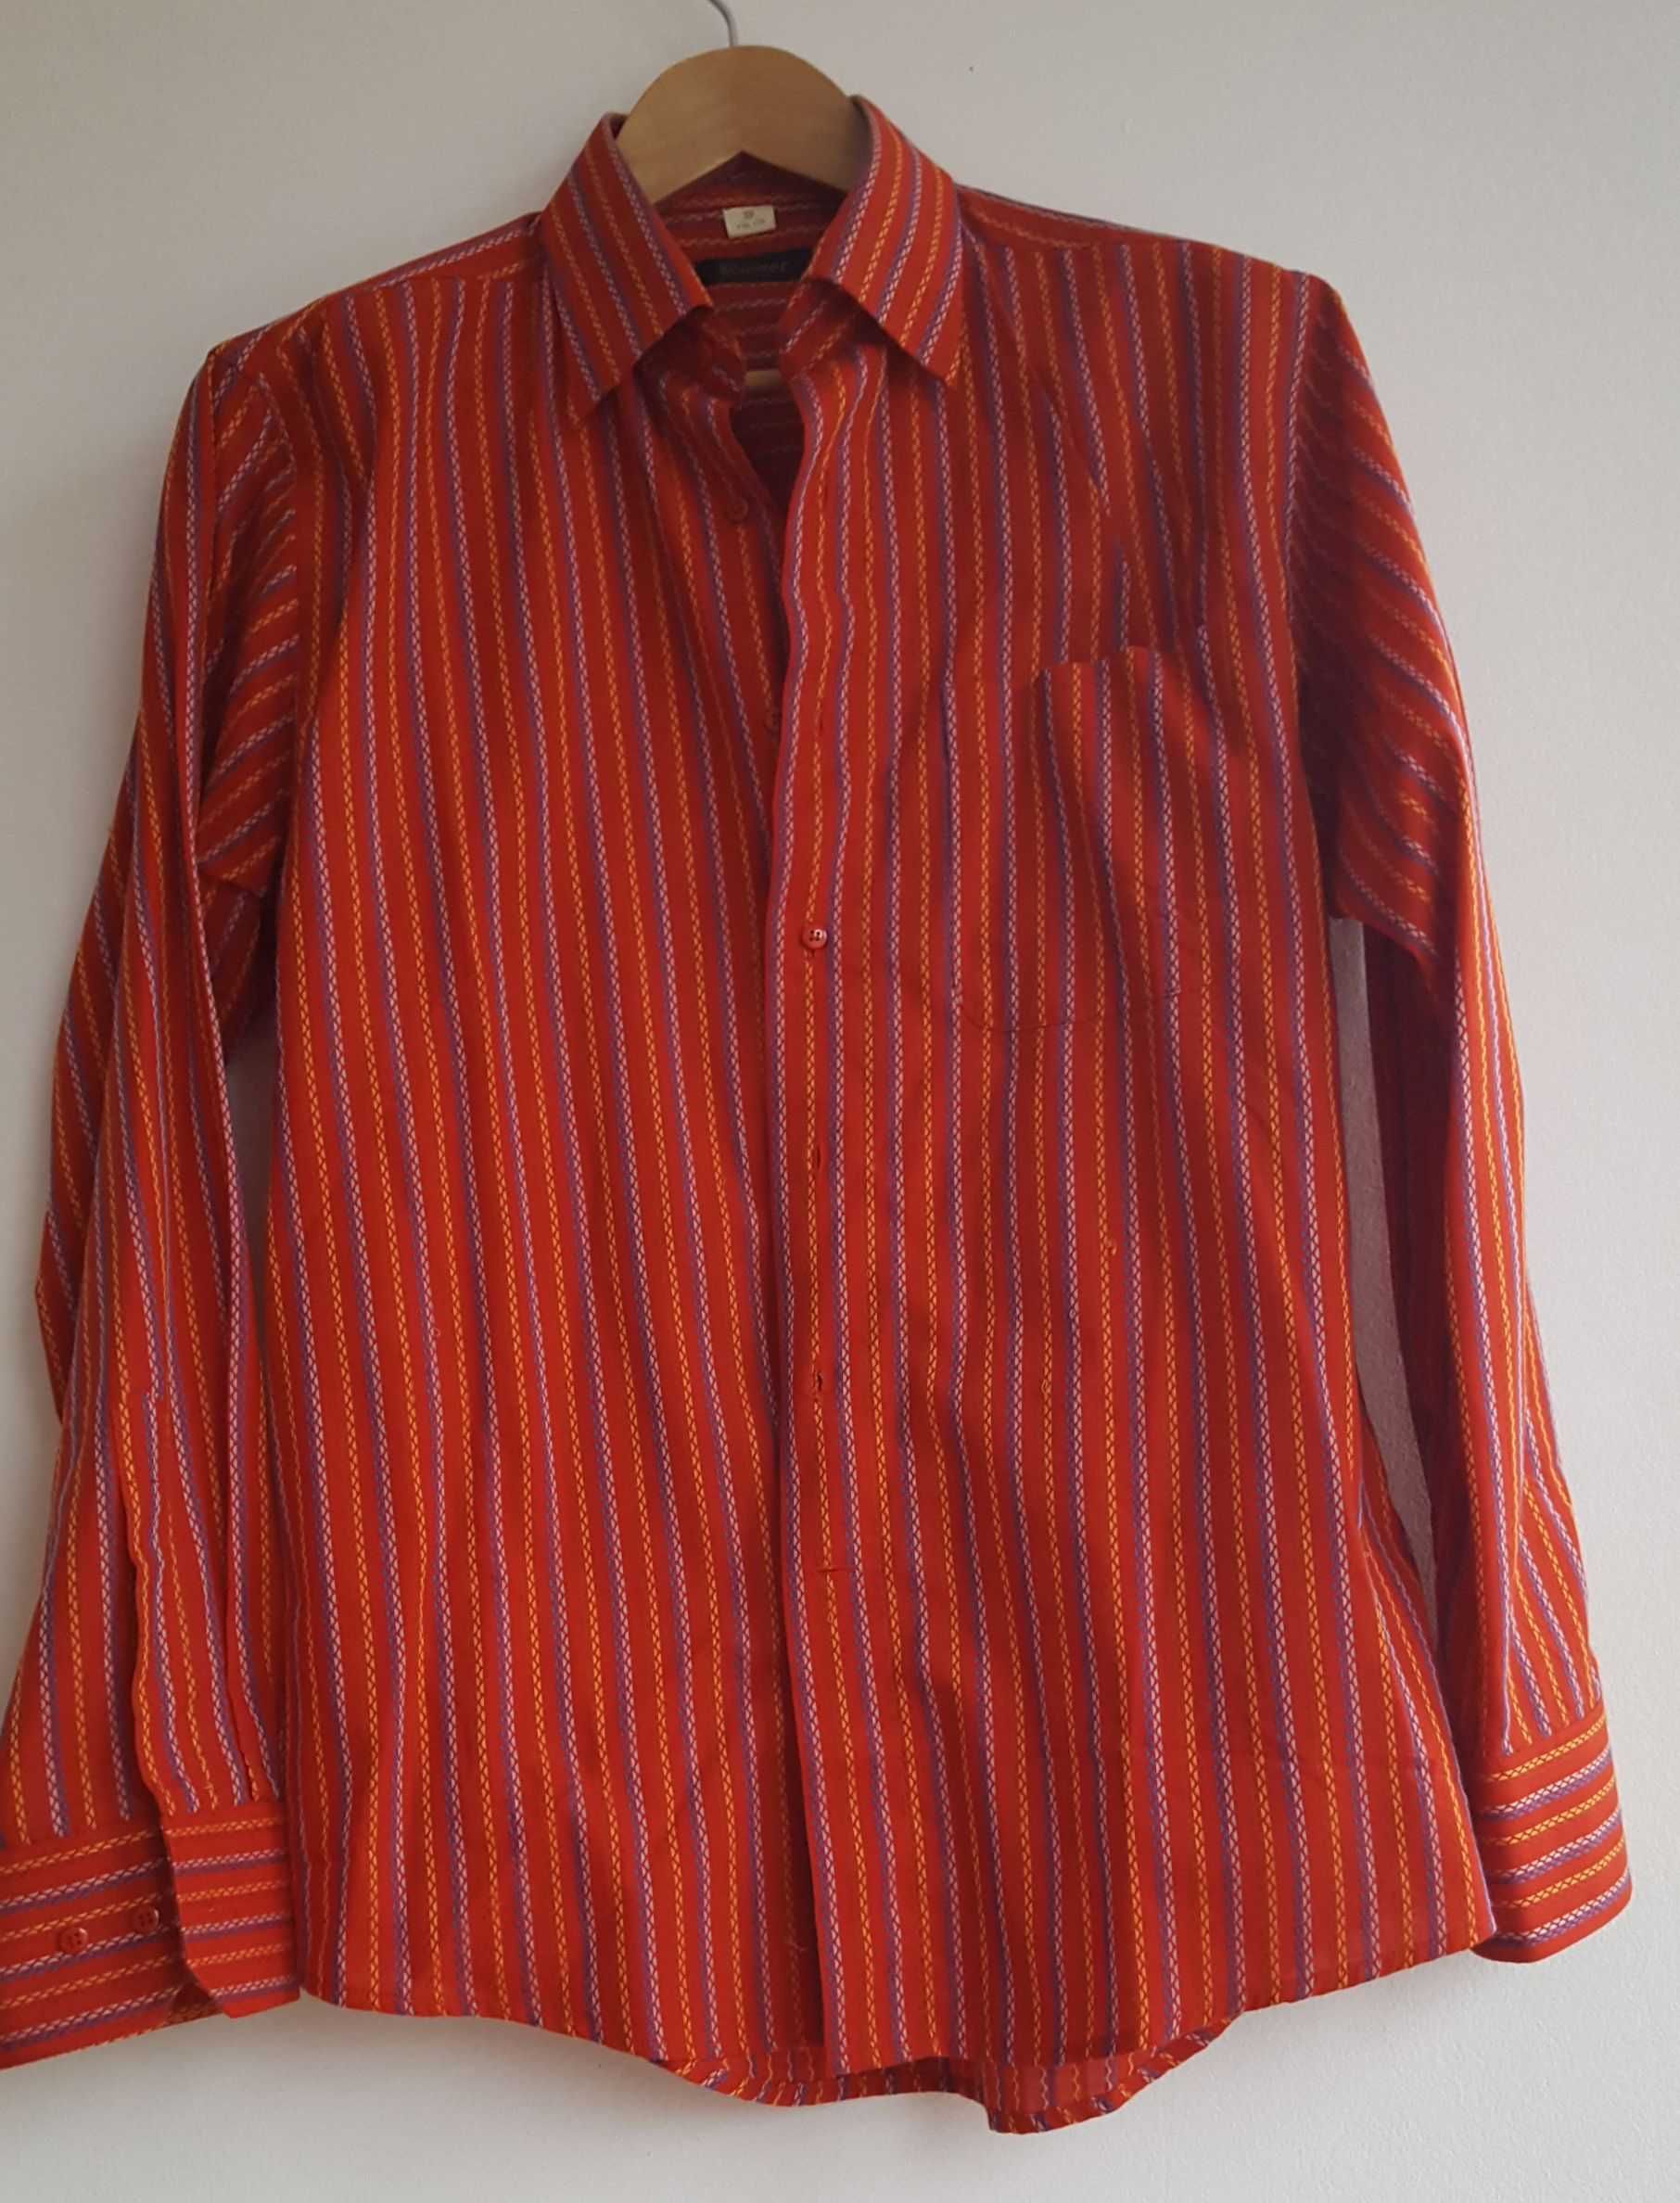 Koszula męska żywy czerwony kolor, 39/ 176 cm